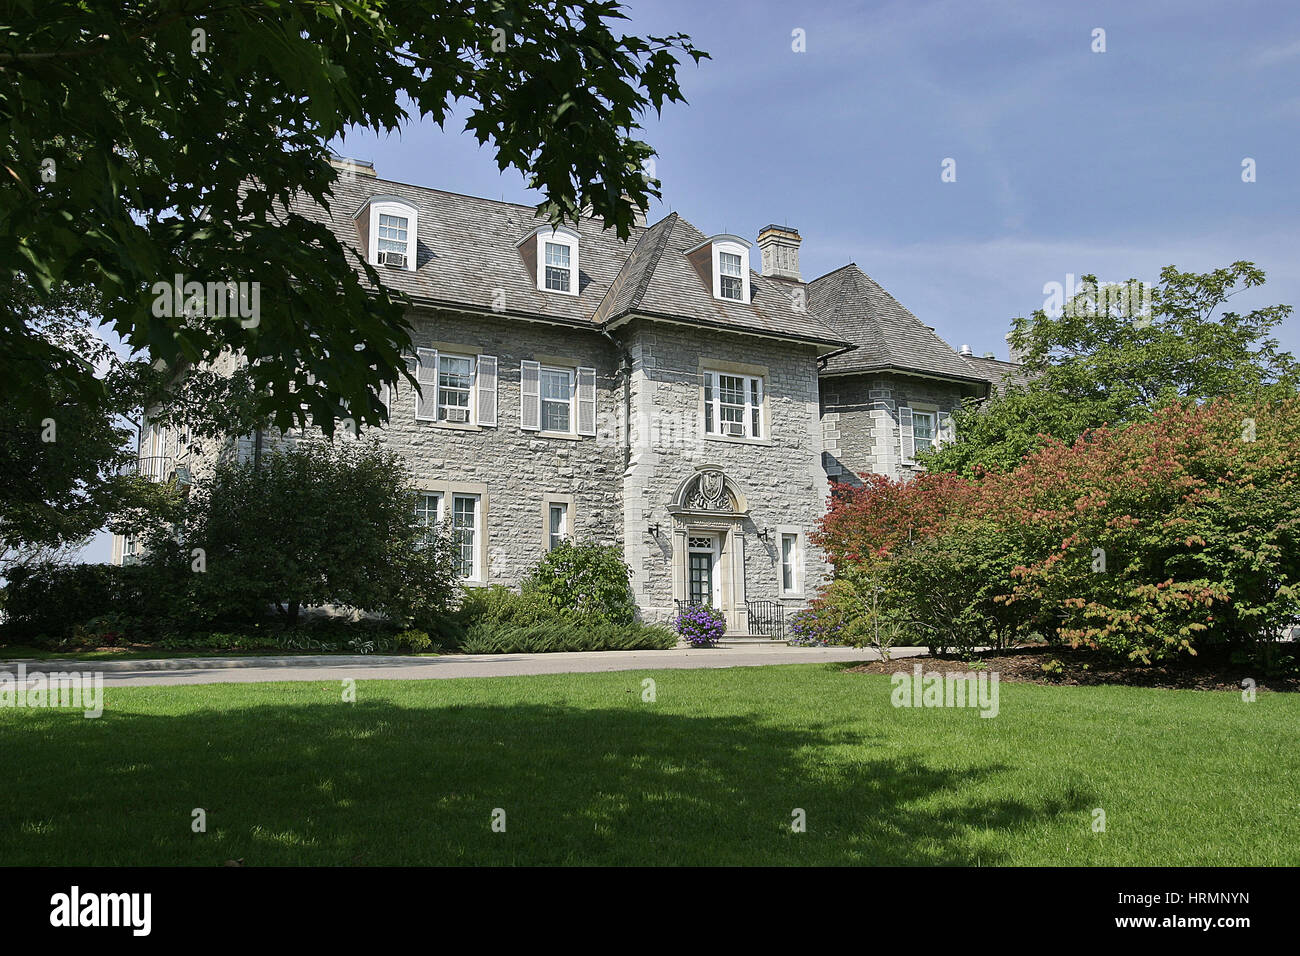 24 Sussex Drive, la residencia oficial del Primer Ministro de Canadá. Foto de stock